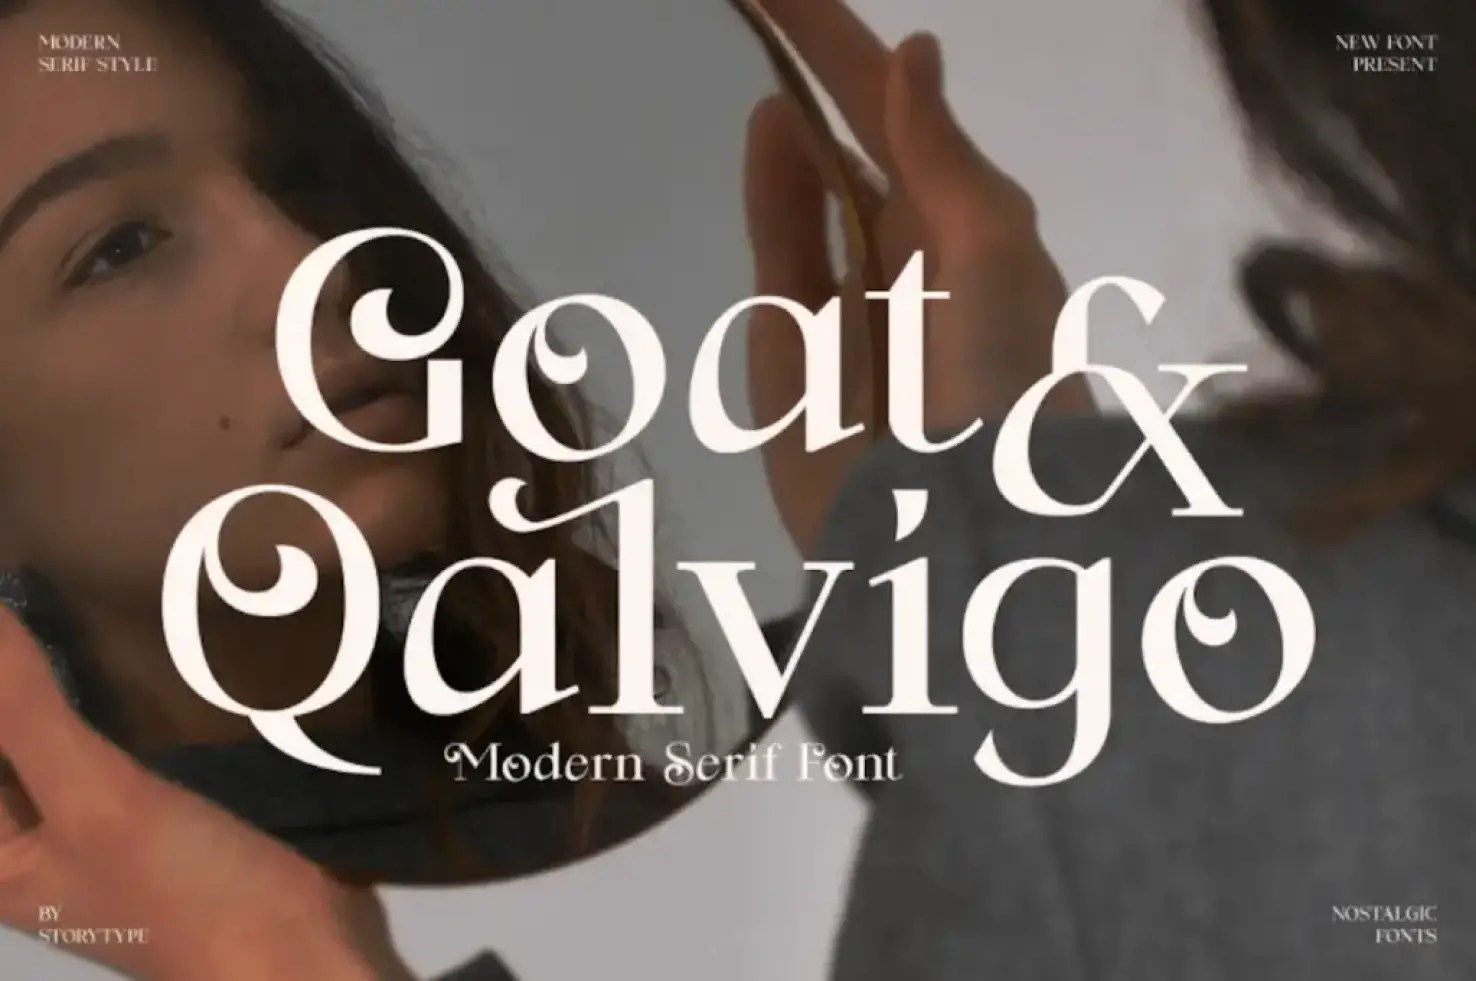 Goat & Qalvigo - Best fonts April 2022